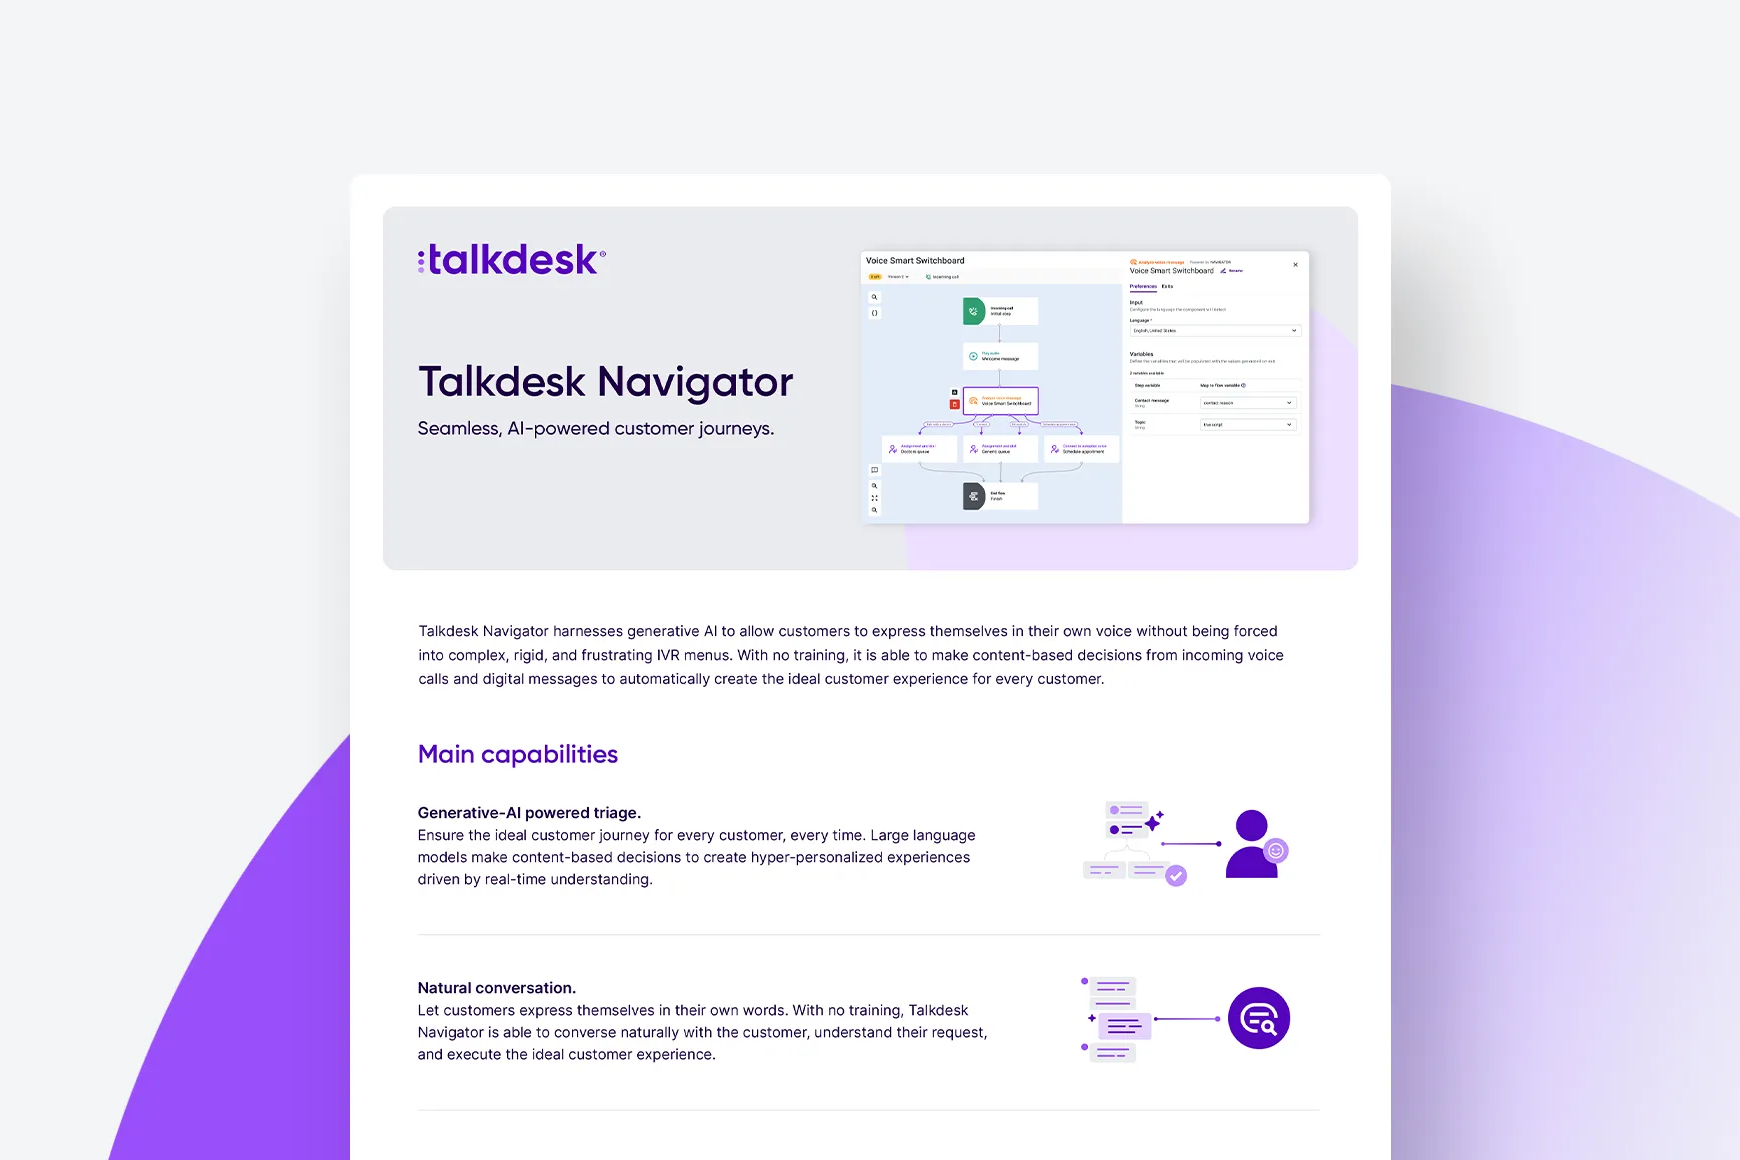 Talkdesk Navigator